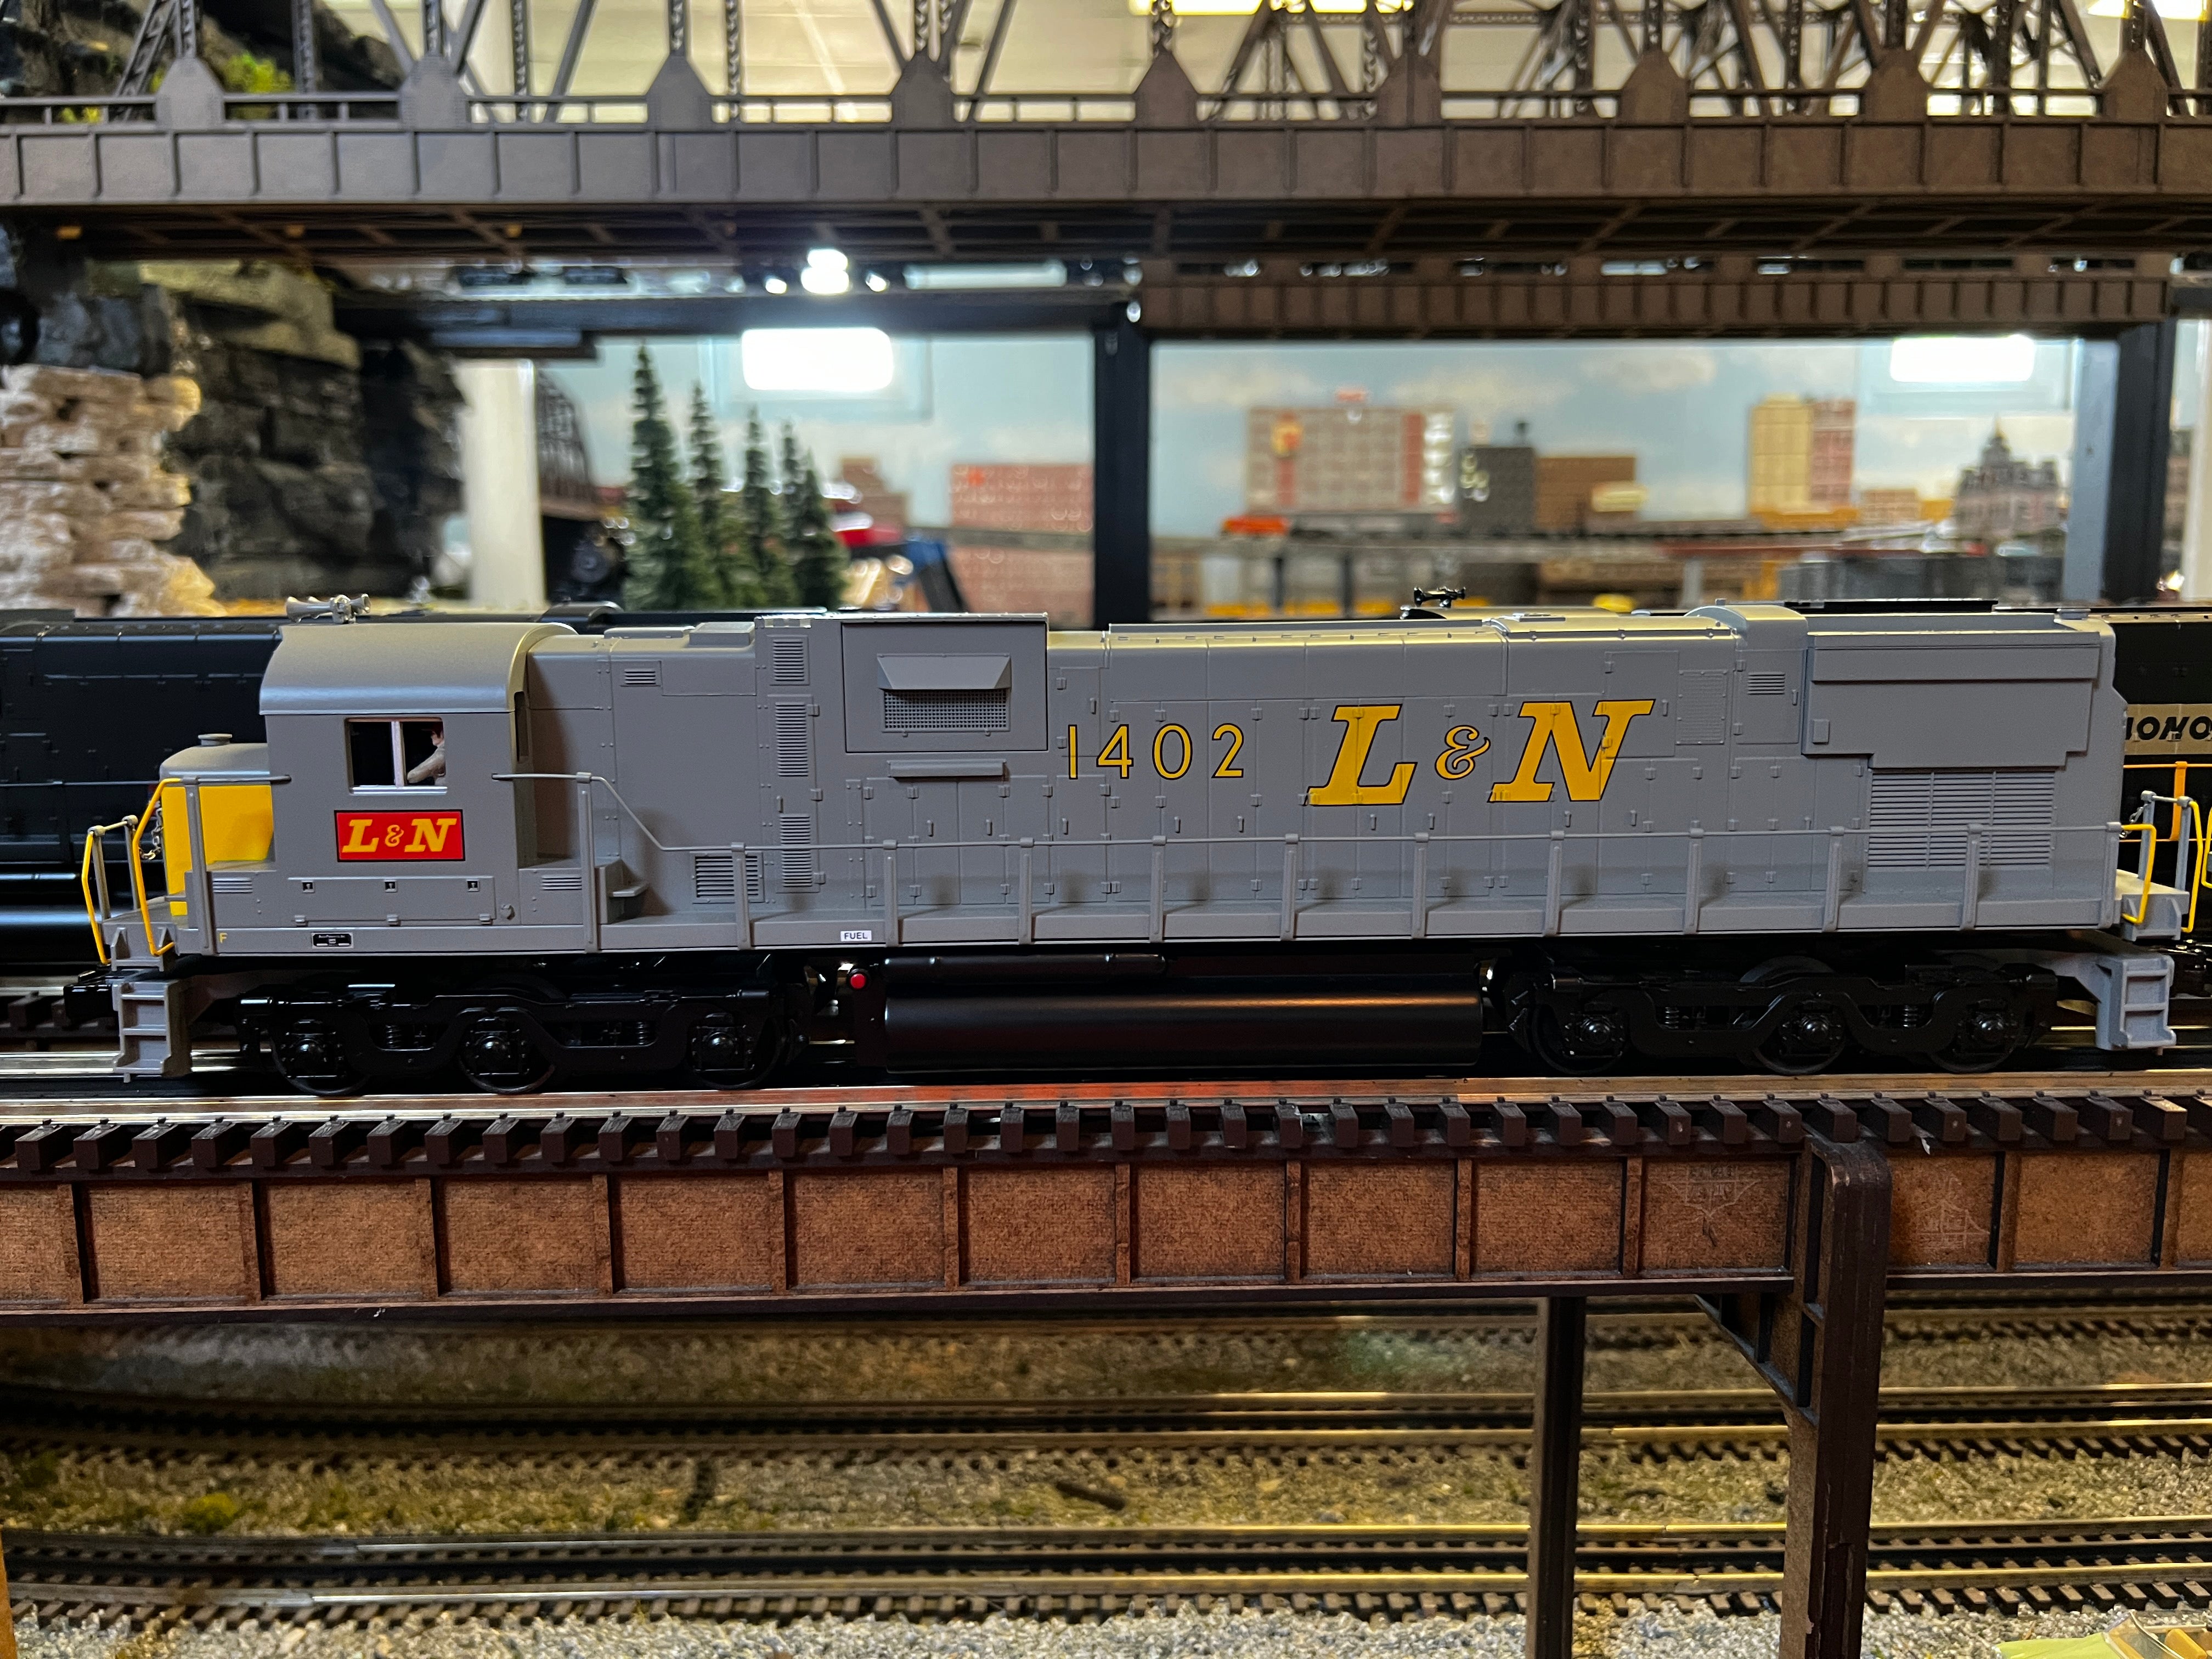 MTH 30-21094-1 - ALCO C-630 Diesel Locomotive "Louisville & Nashville" #1402 - Custom Run for MrMuffin'sTrains